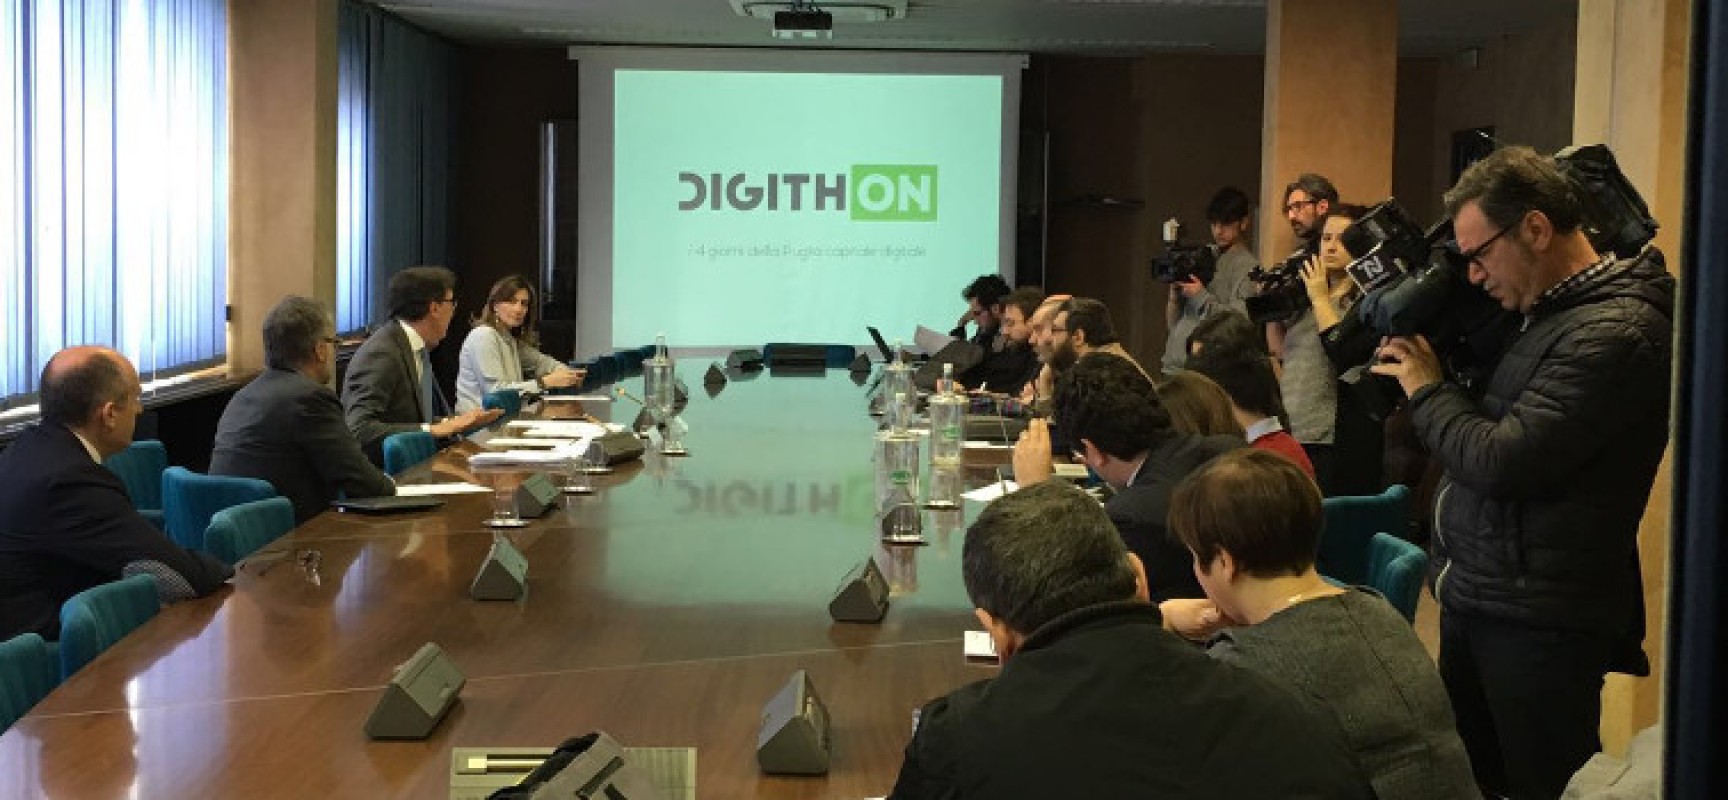 DigithON, la maratona delle idee digitali, promuove “Android Factory 4.0” / DETTAGLI